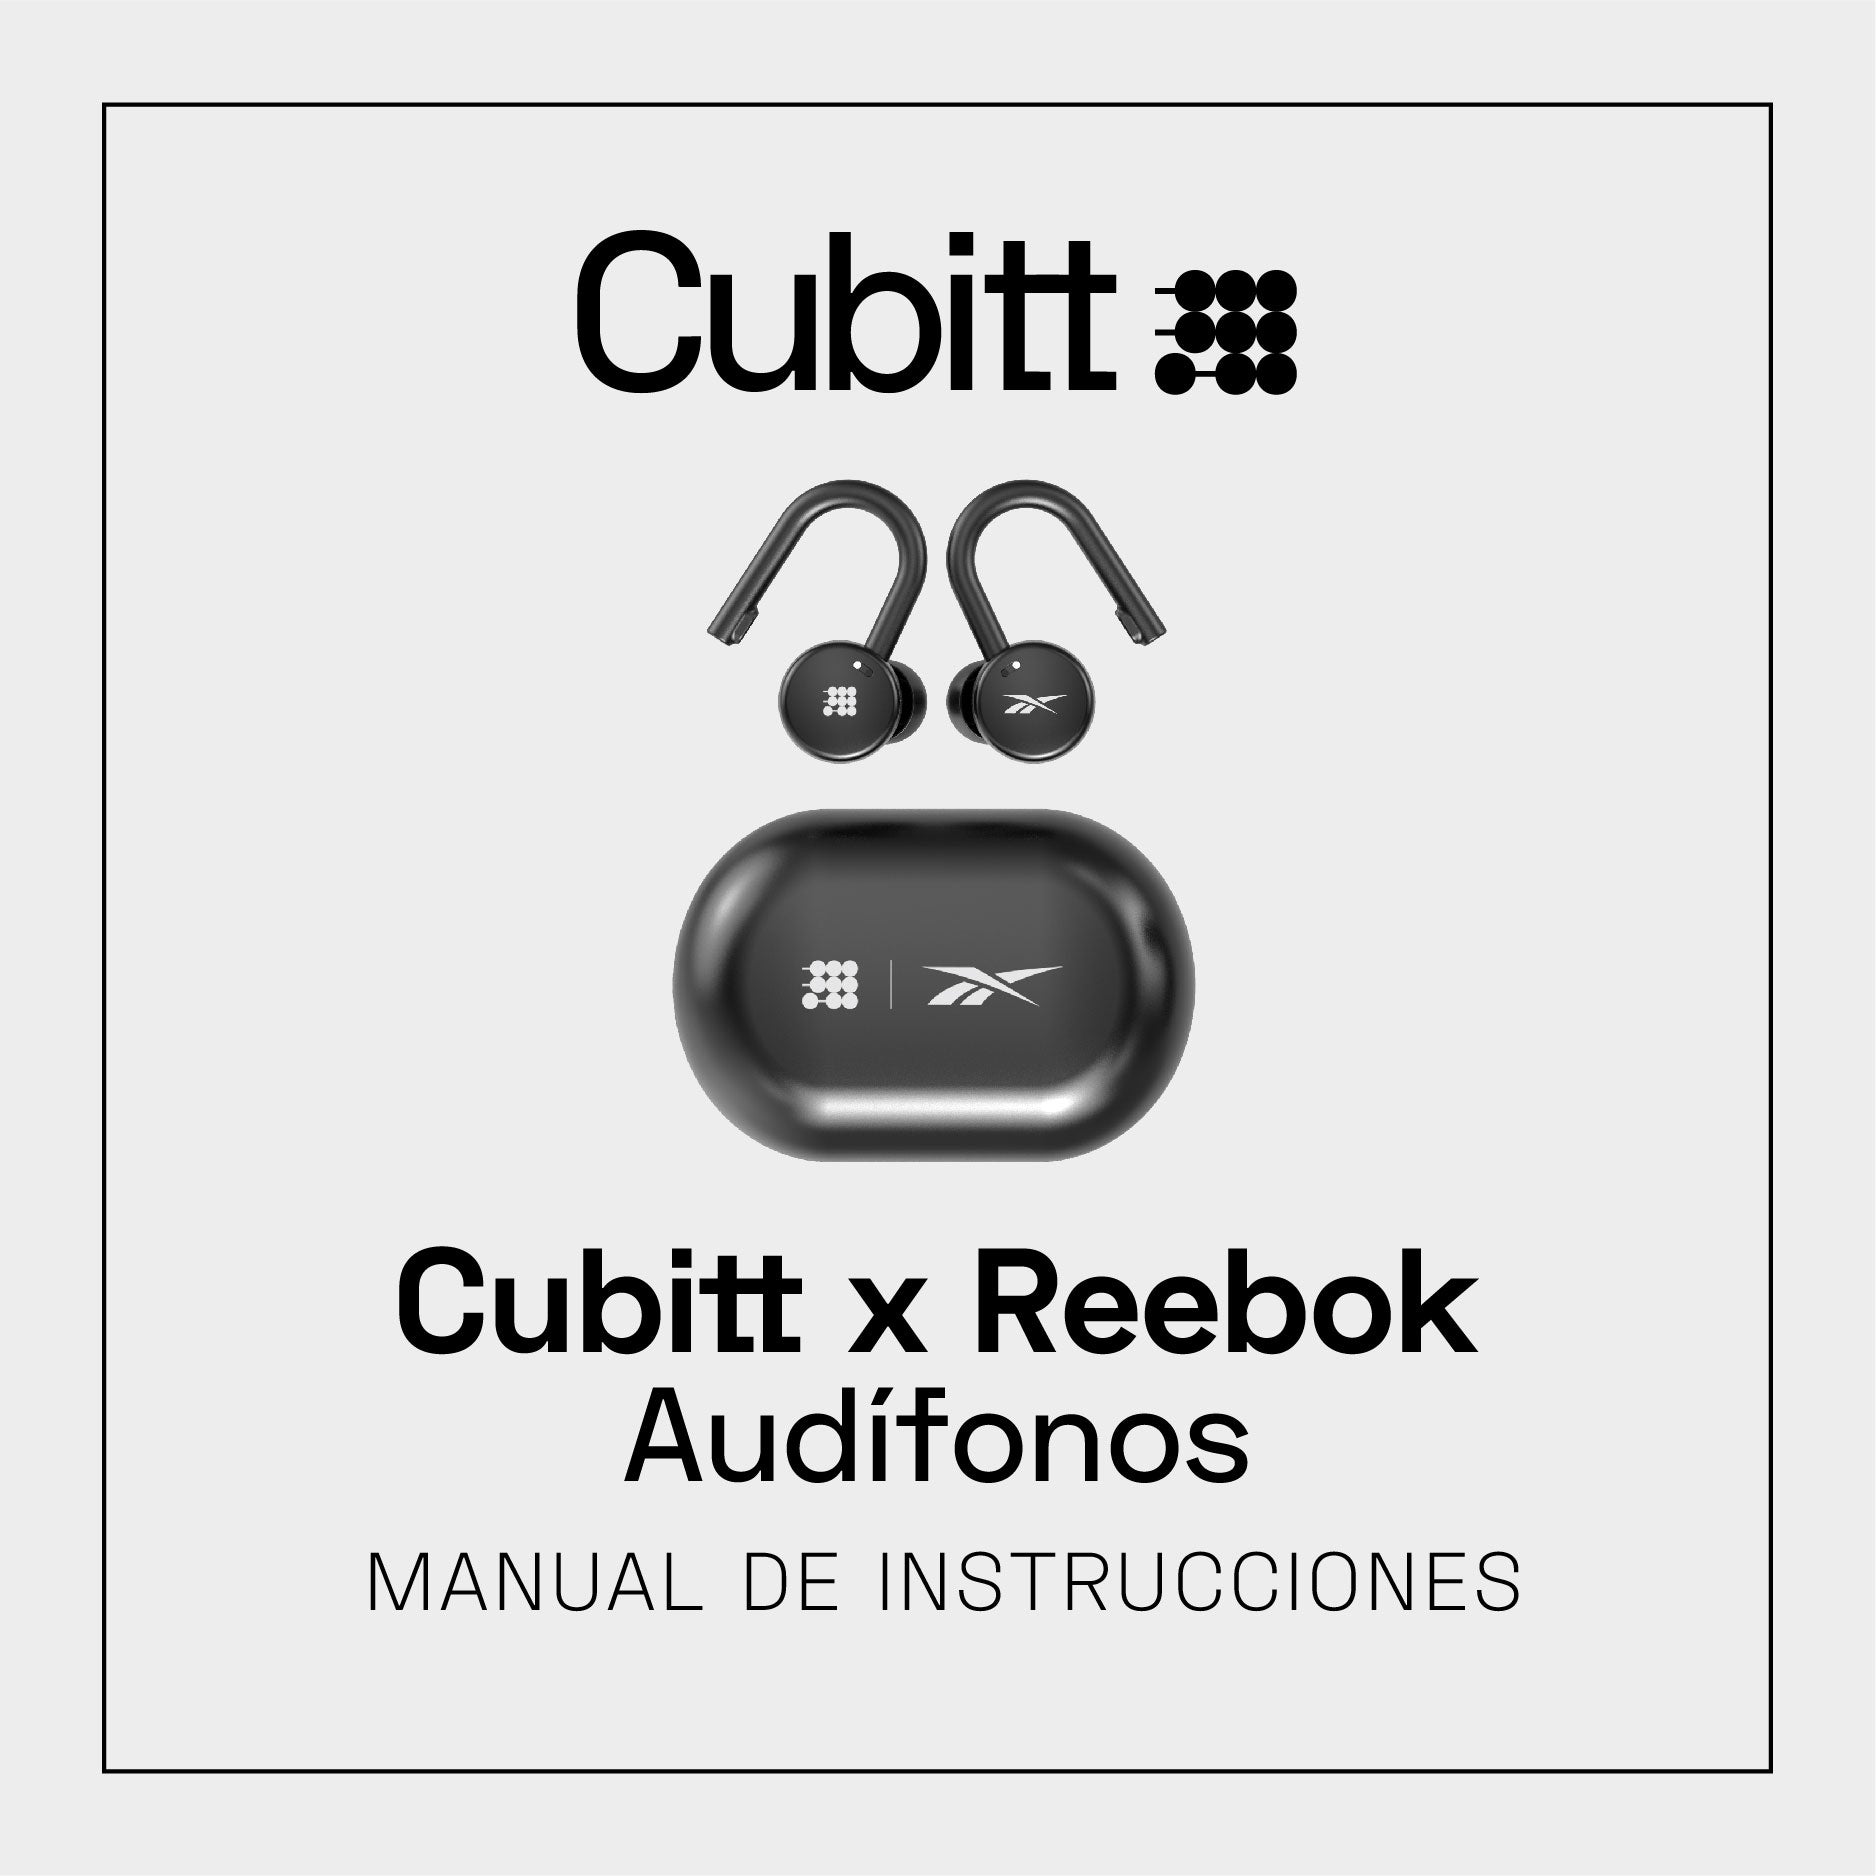 Audífonos Cubitt x Reebok